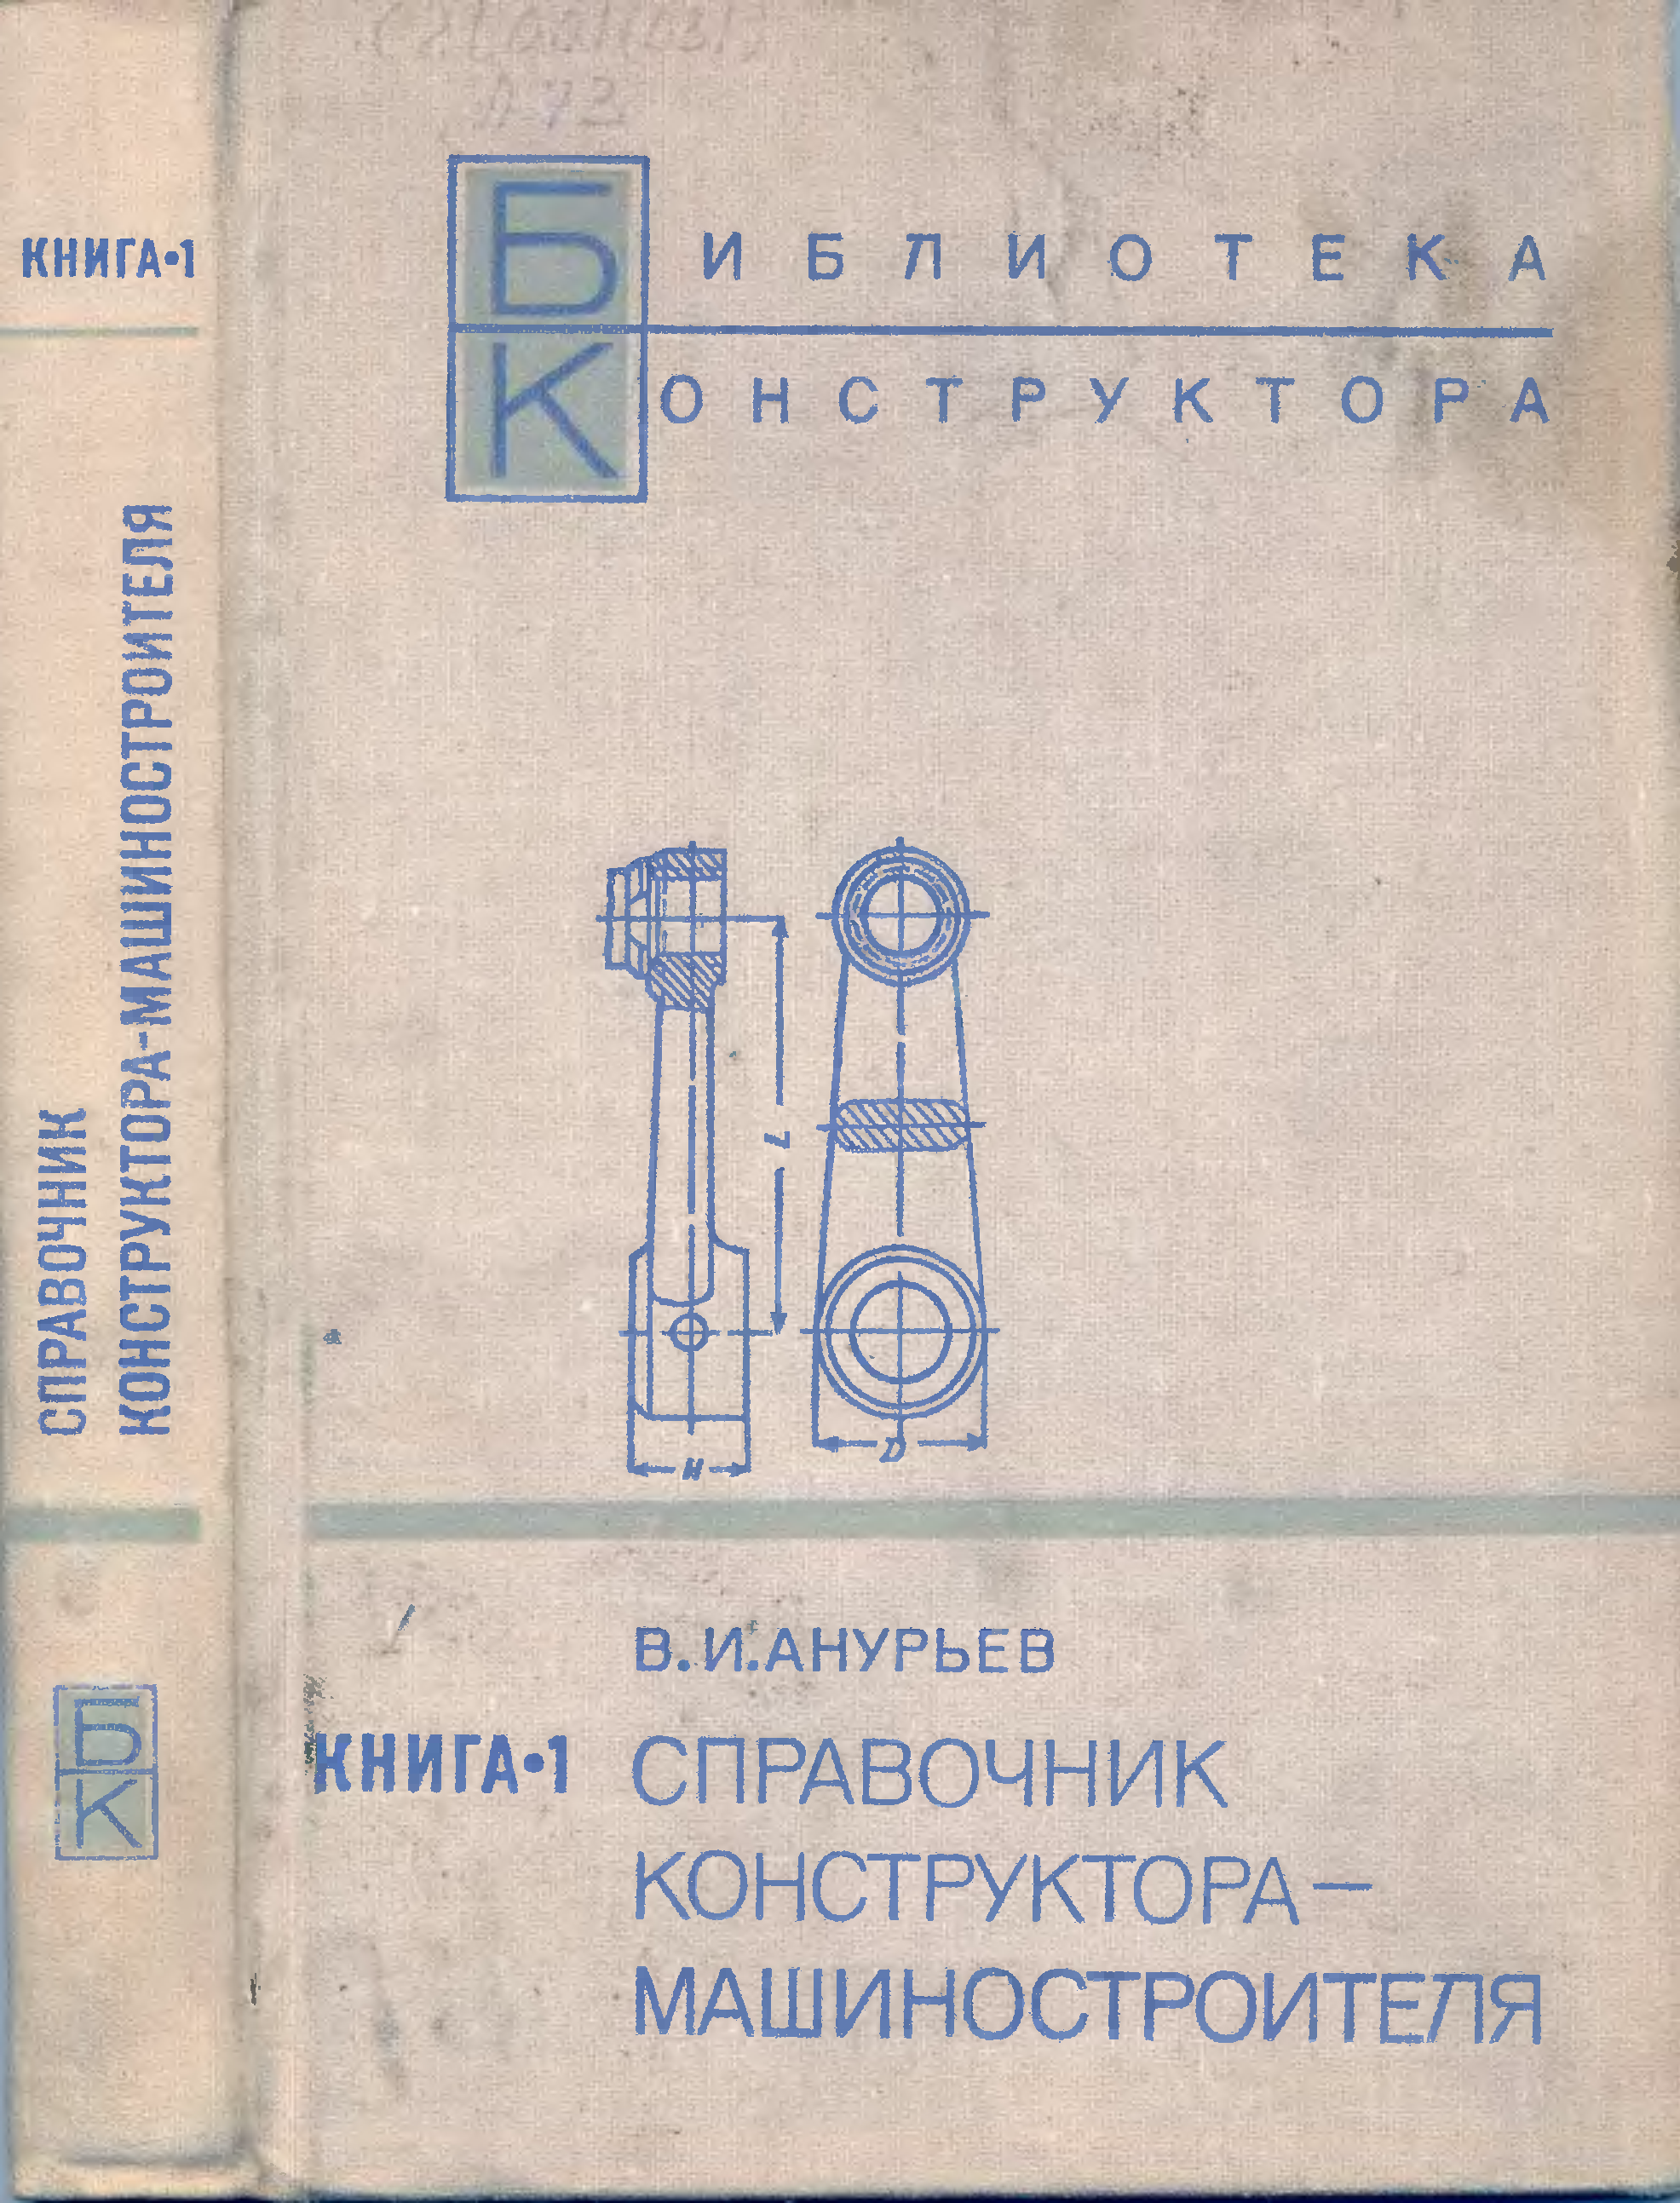 Справочник конструктора-машиностроителя. Кн.1 (1973) В.И. Анурьев